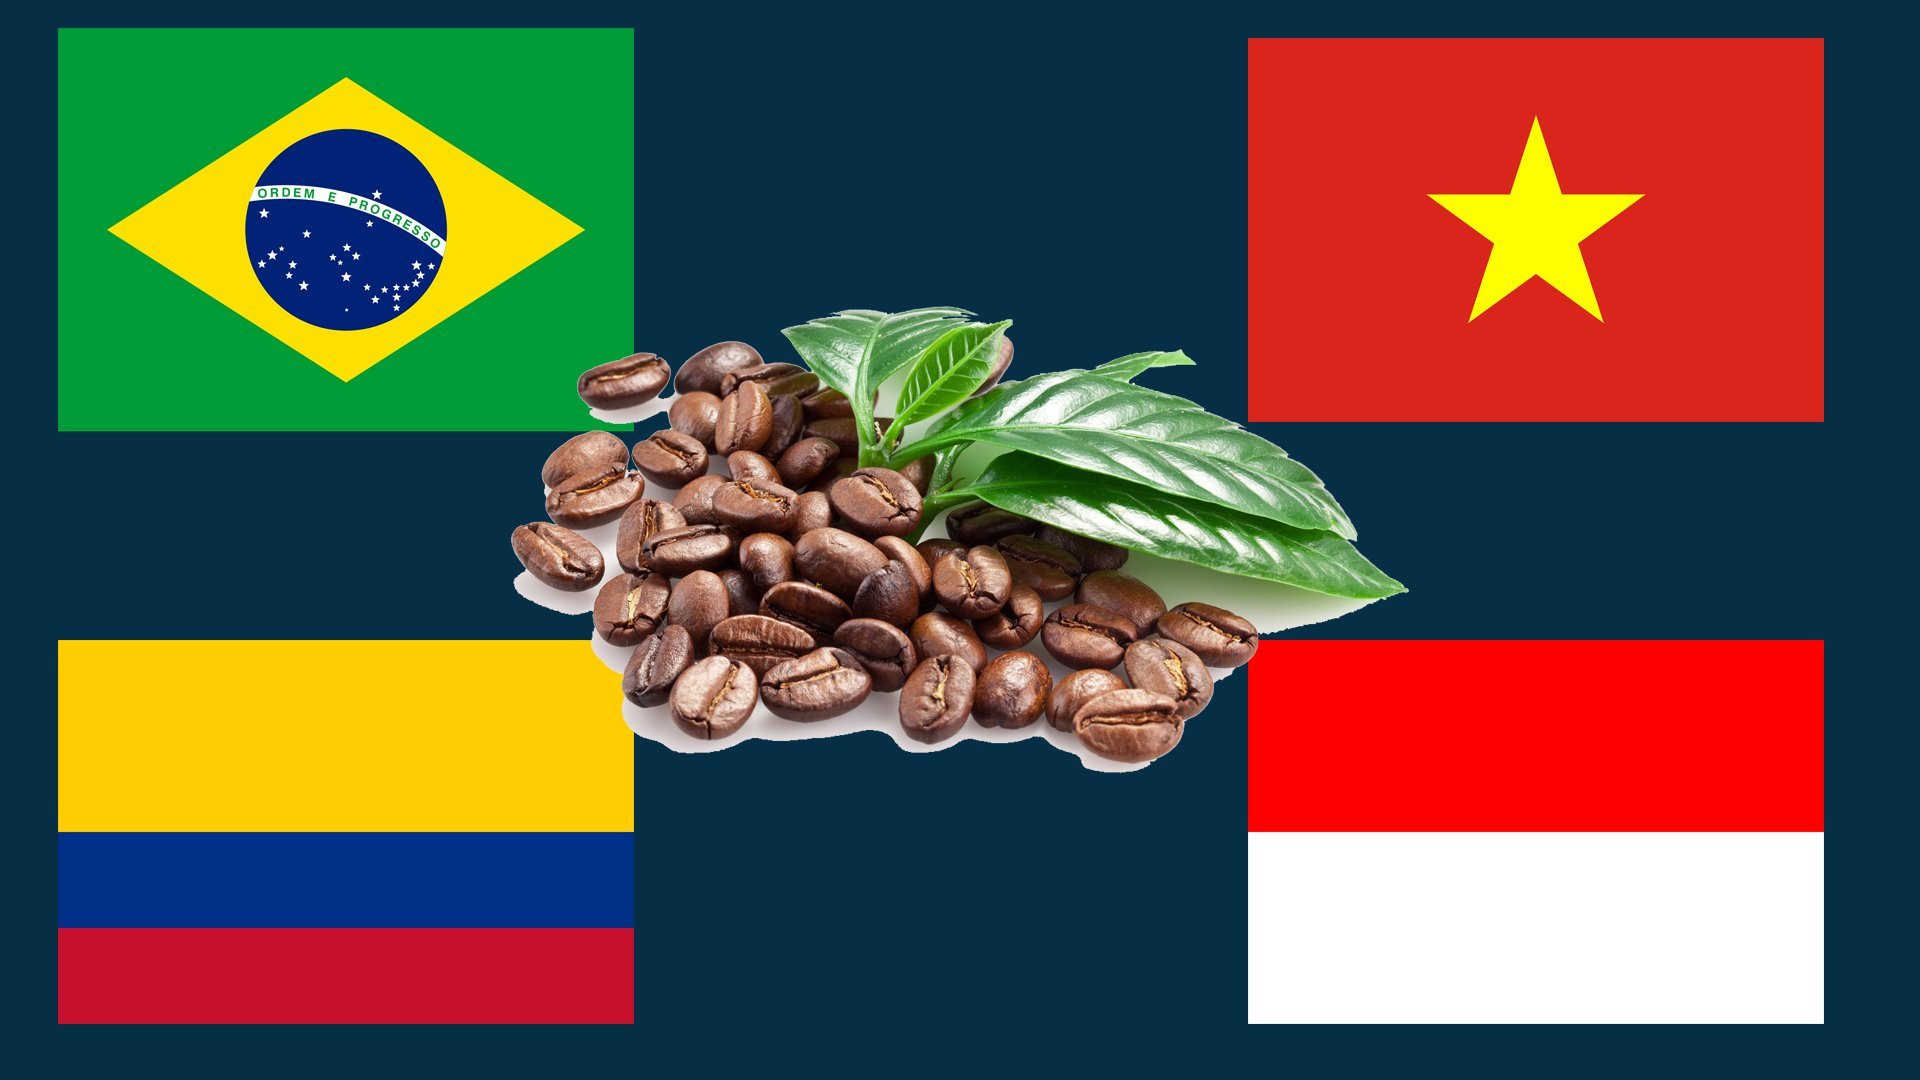 Бразилия является крупнейшим производителем. На национальной майке бразильцев помимо флага, есть кофейные зерна..